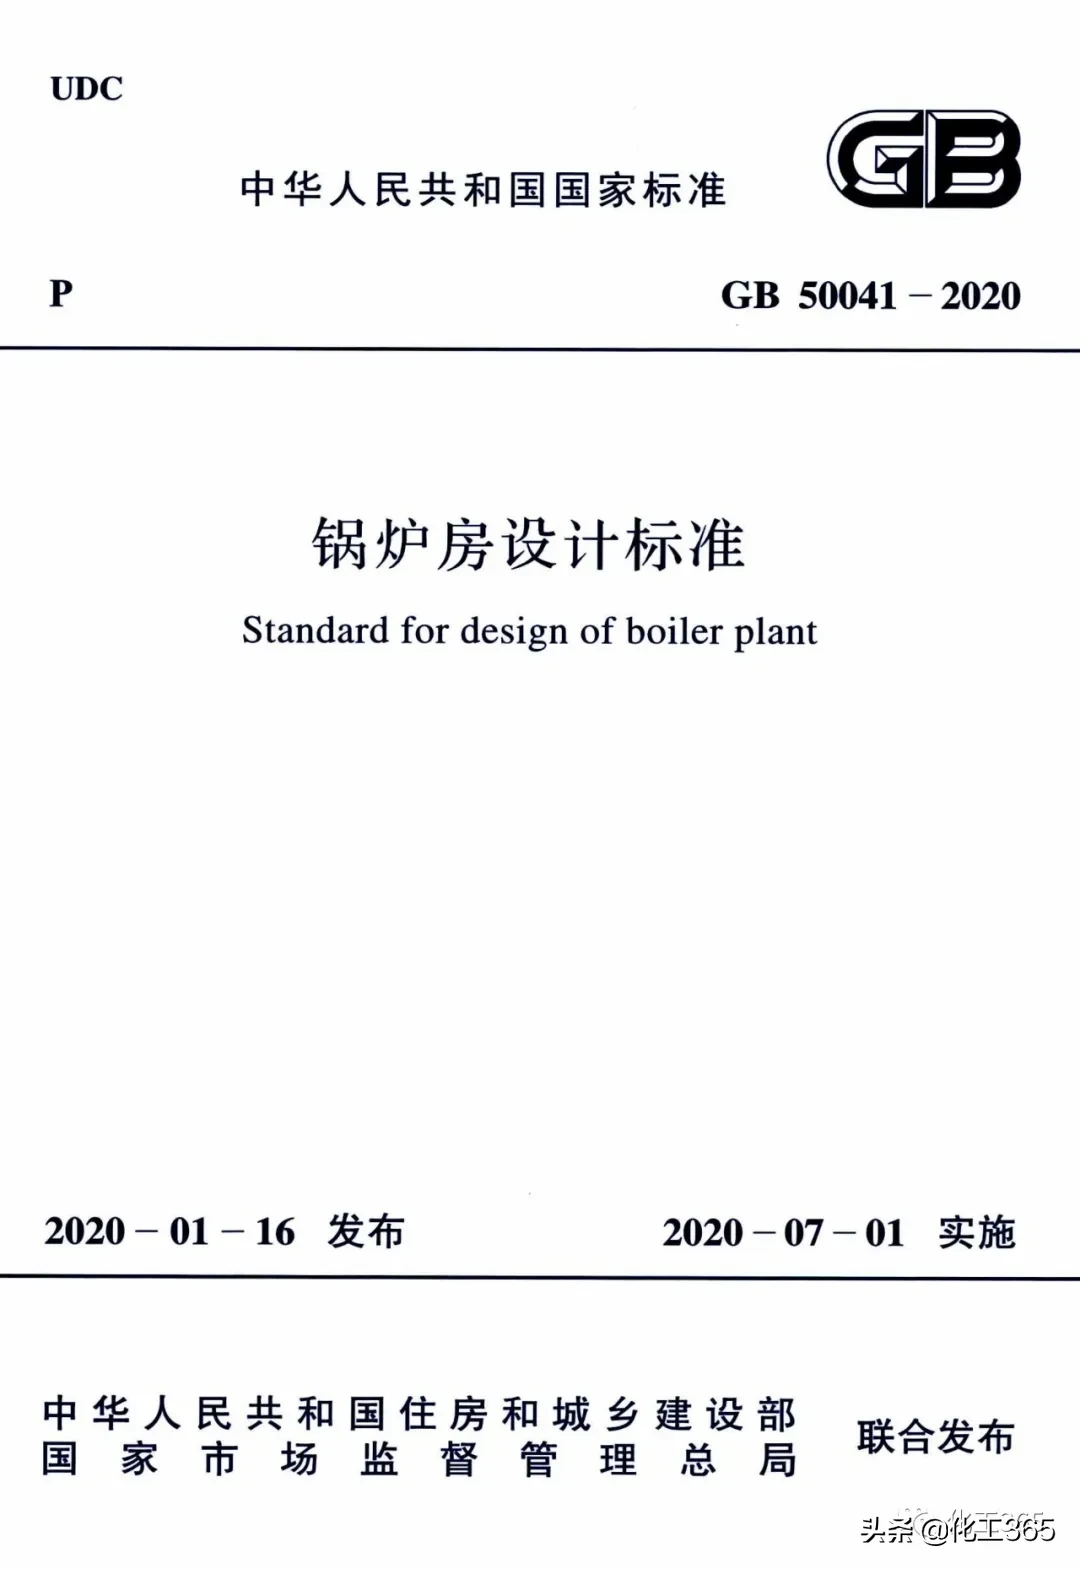 2020-《锅炉房设计标准》GB50041-2020_国标_法律法规_安徽省安全生产协会